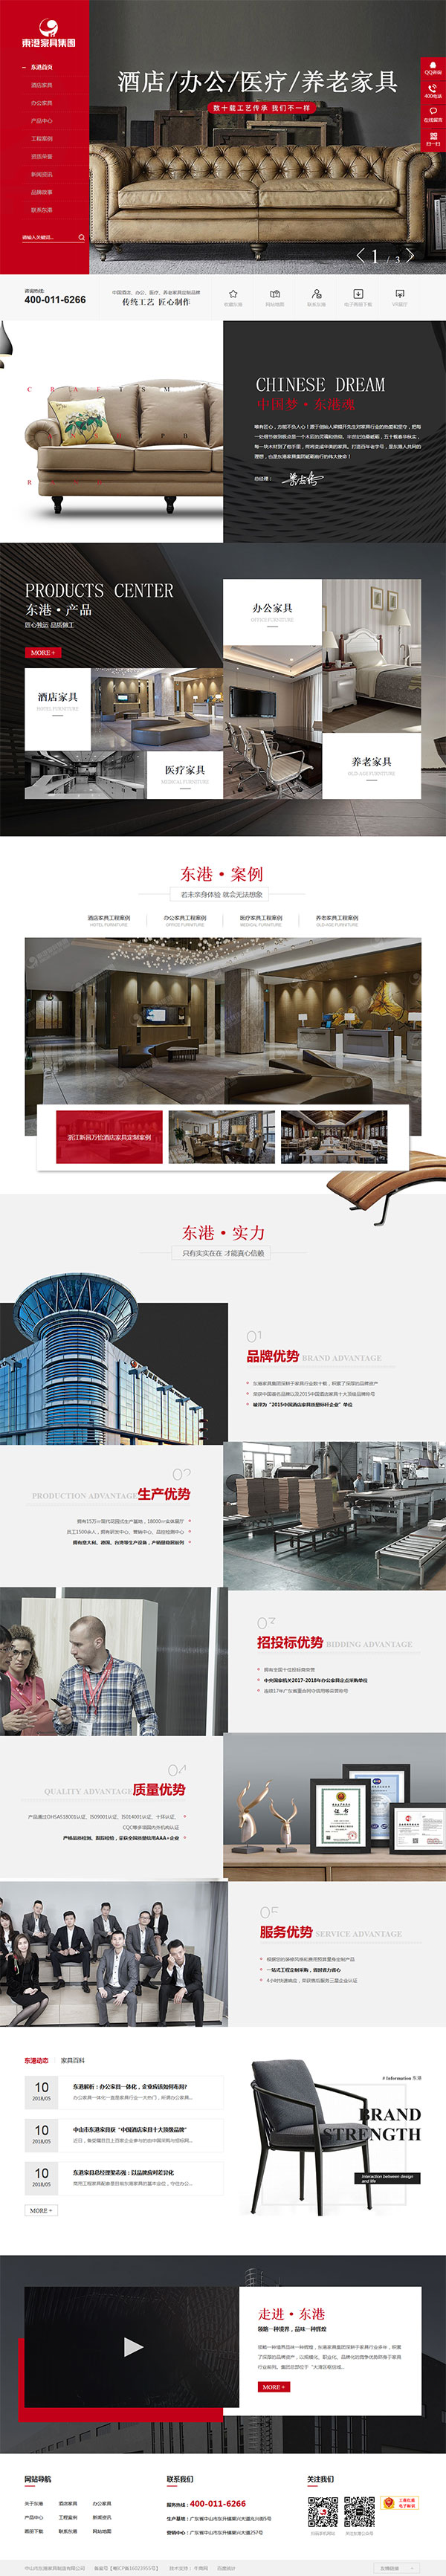 东港家具-营销型网站页面